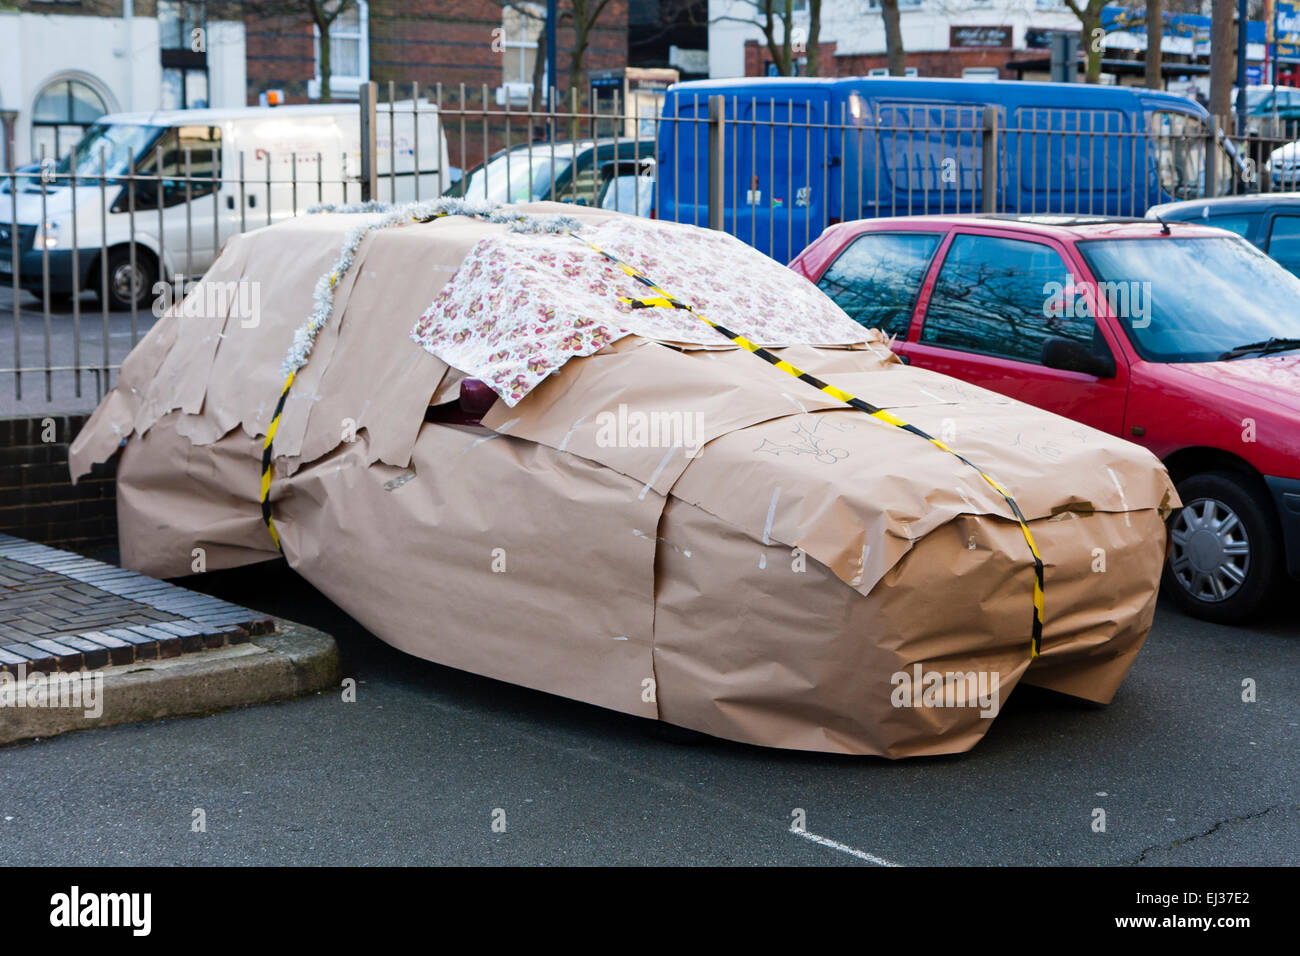 Auto geschenk verpackt -Fotos und -Bildmaterial in hoher Auflösung – Alamy